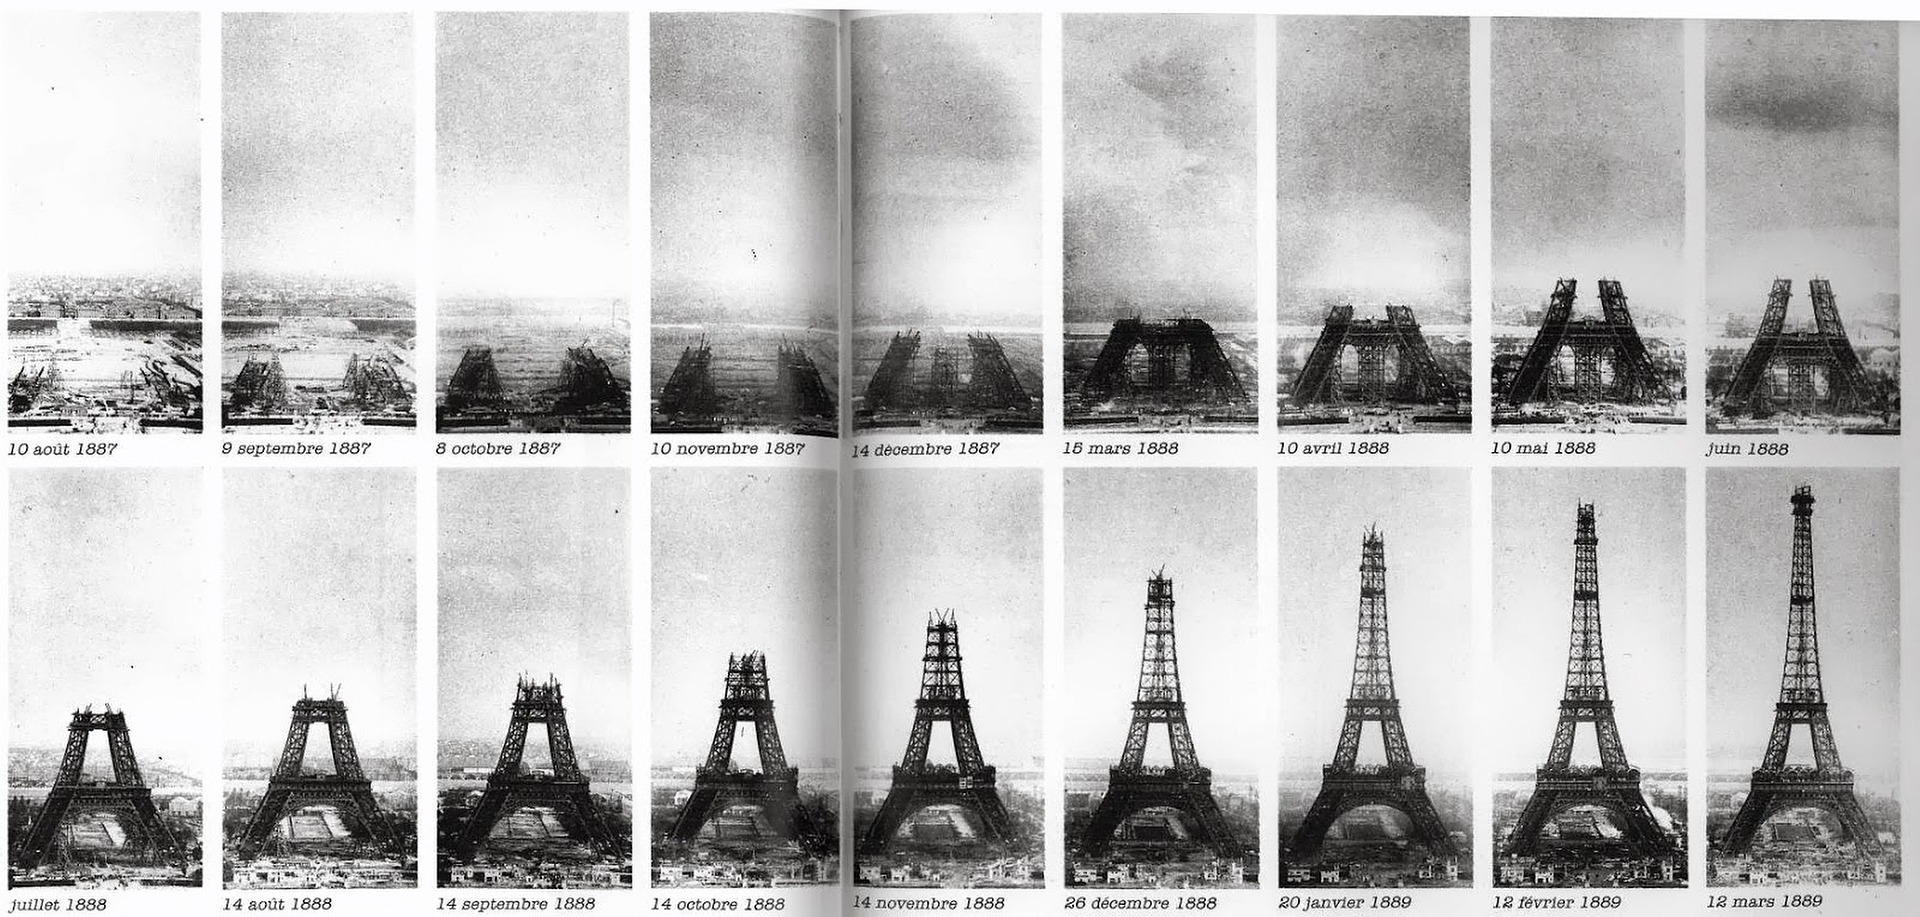 La Torre Eiffel es uno de los disenos efimeros mas famosos que acabo convirtiendose en un hito permanente